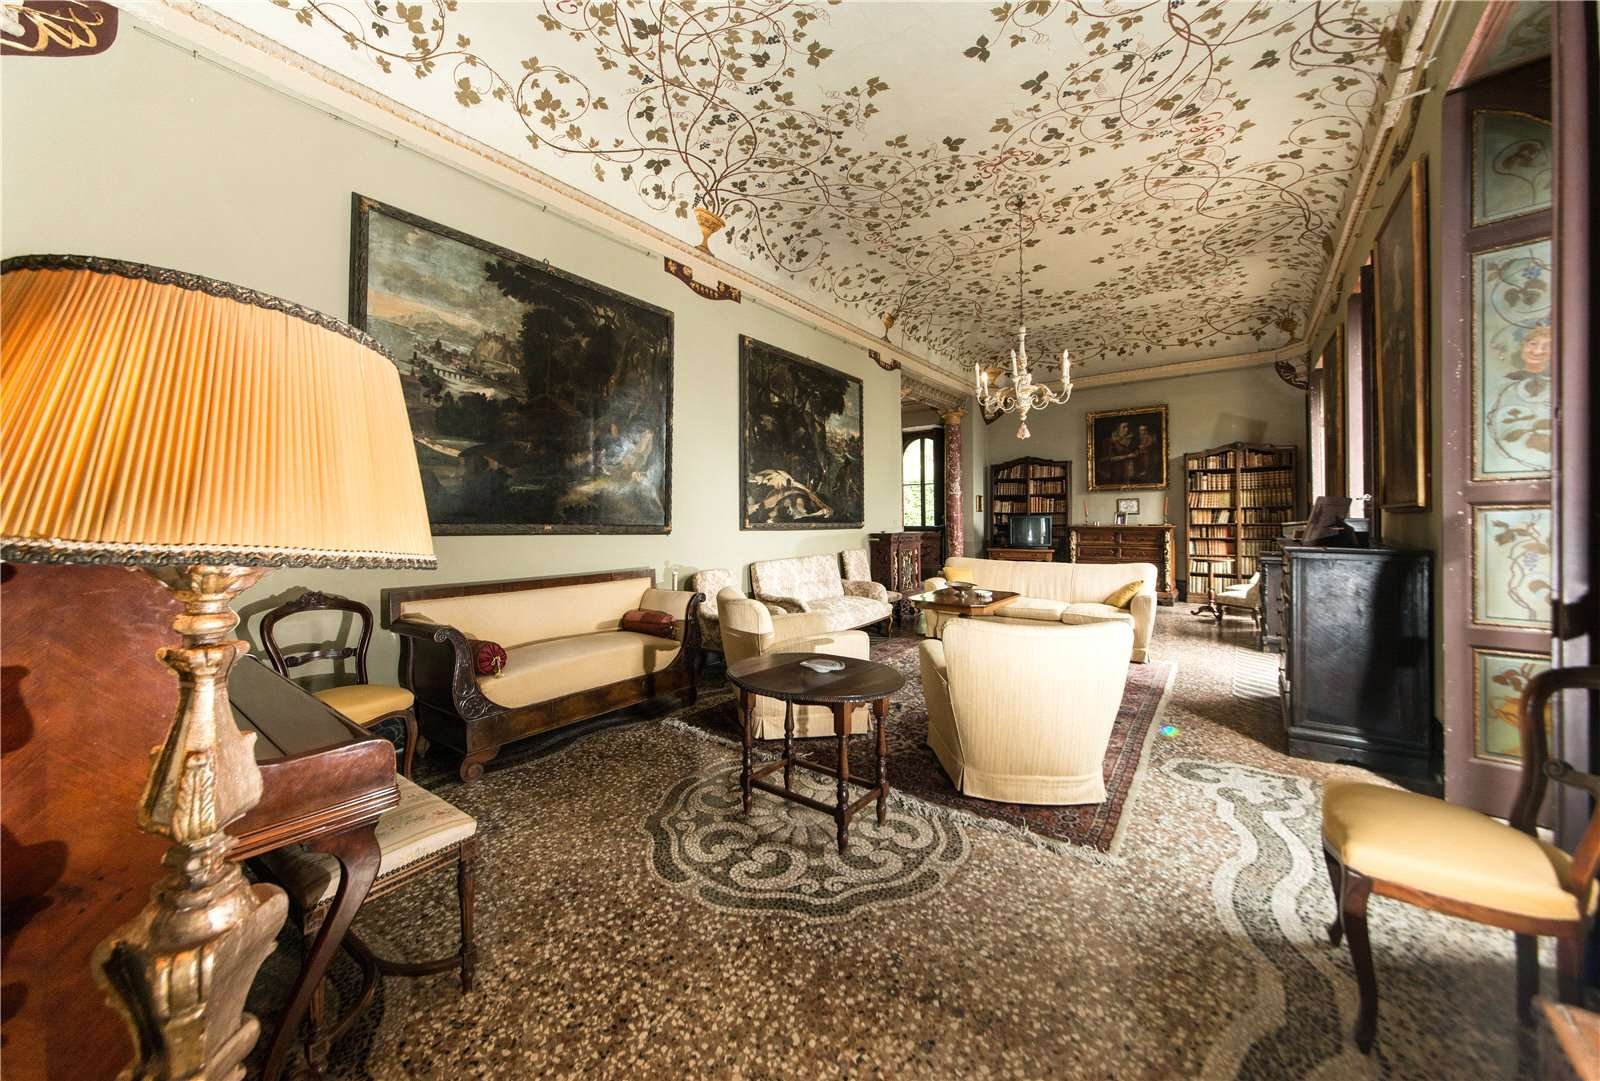 Francis YorkVilla L'Eremitaggio: Historic Villa On Lake Maggiore 9.jpg